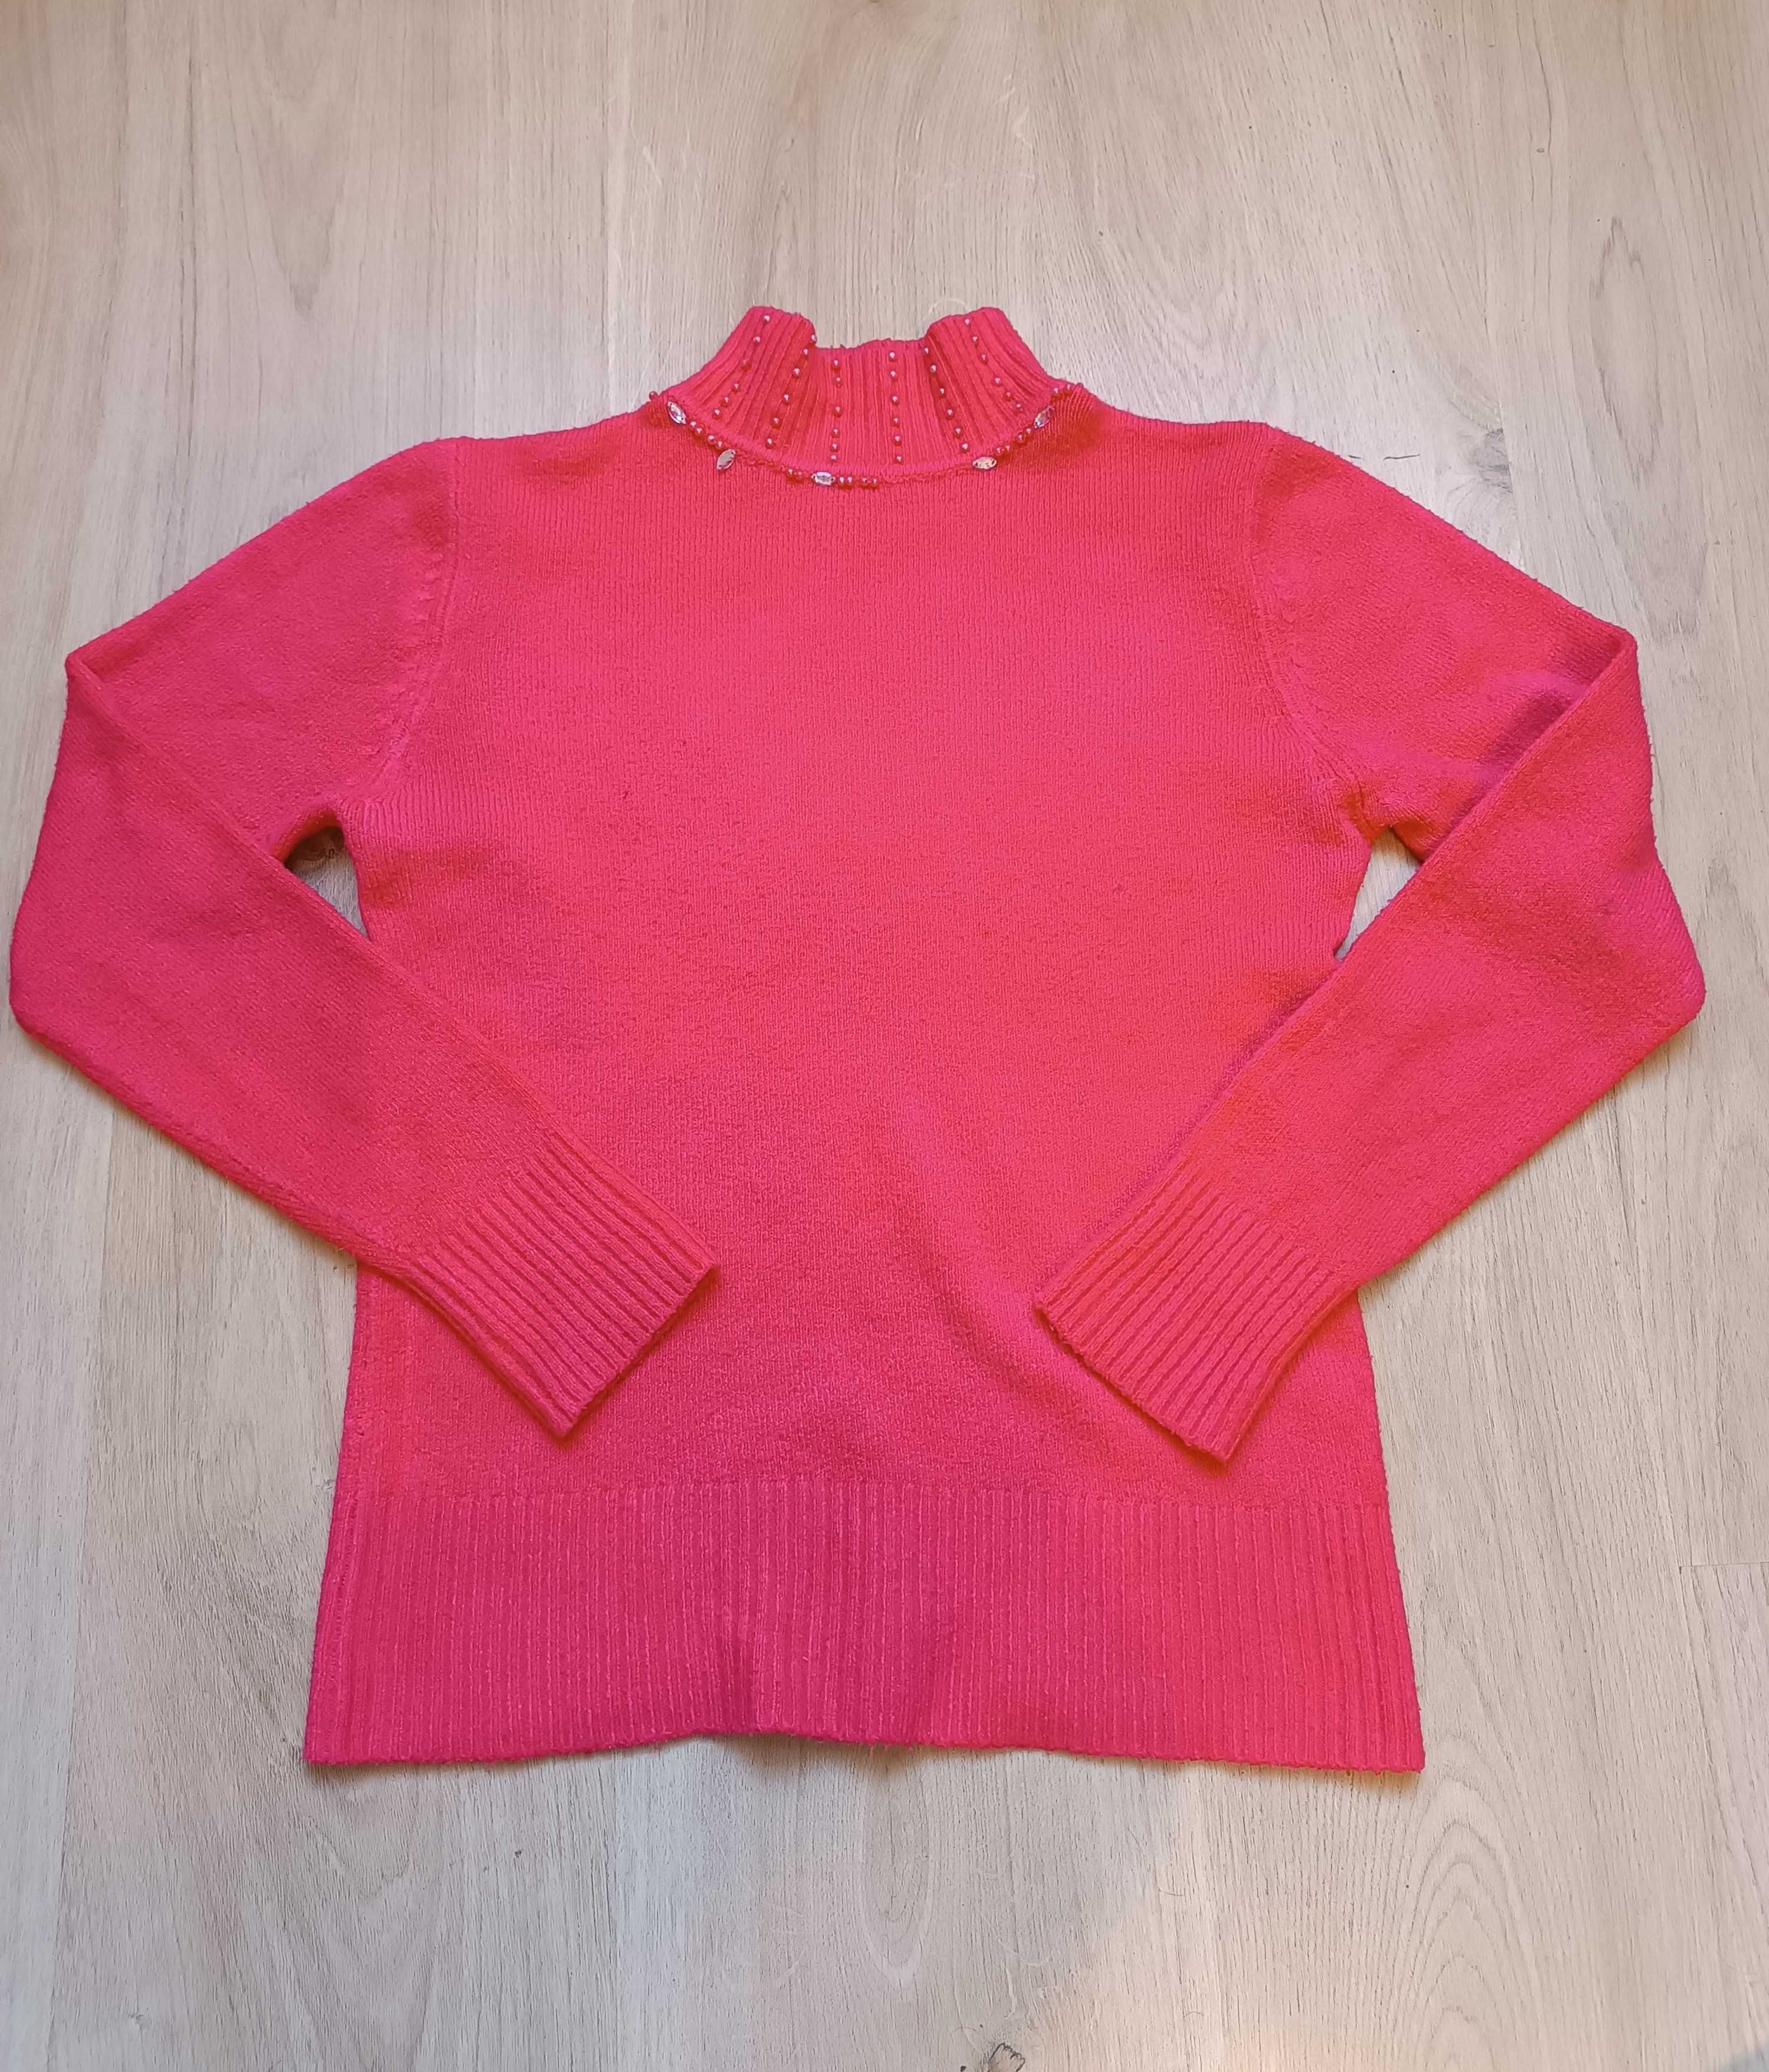 Damski różowy sweterek/półgolf